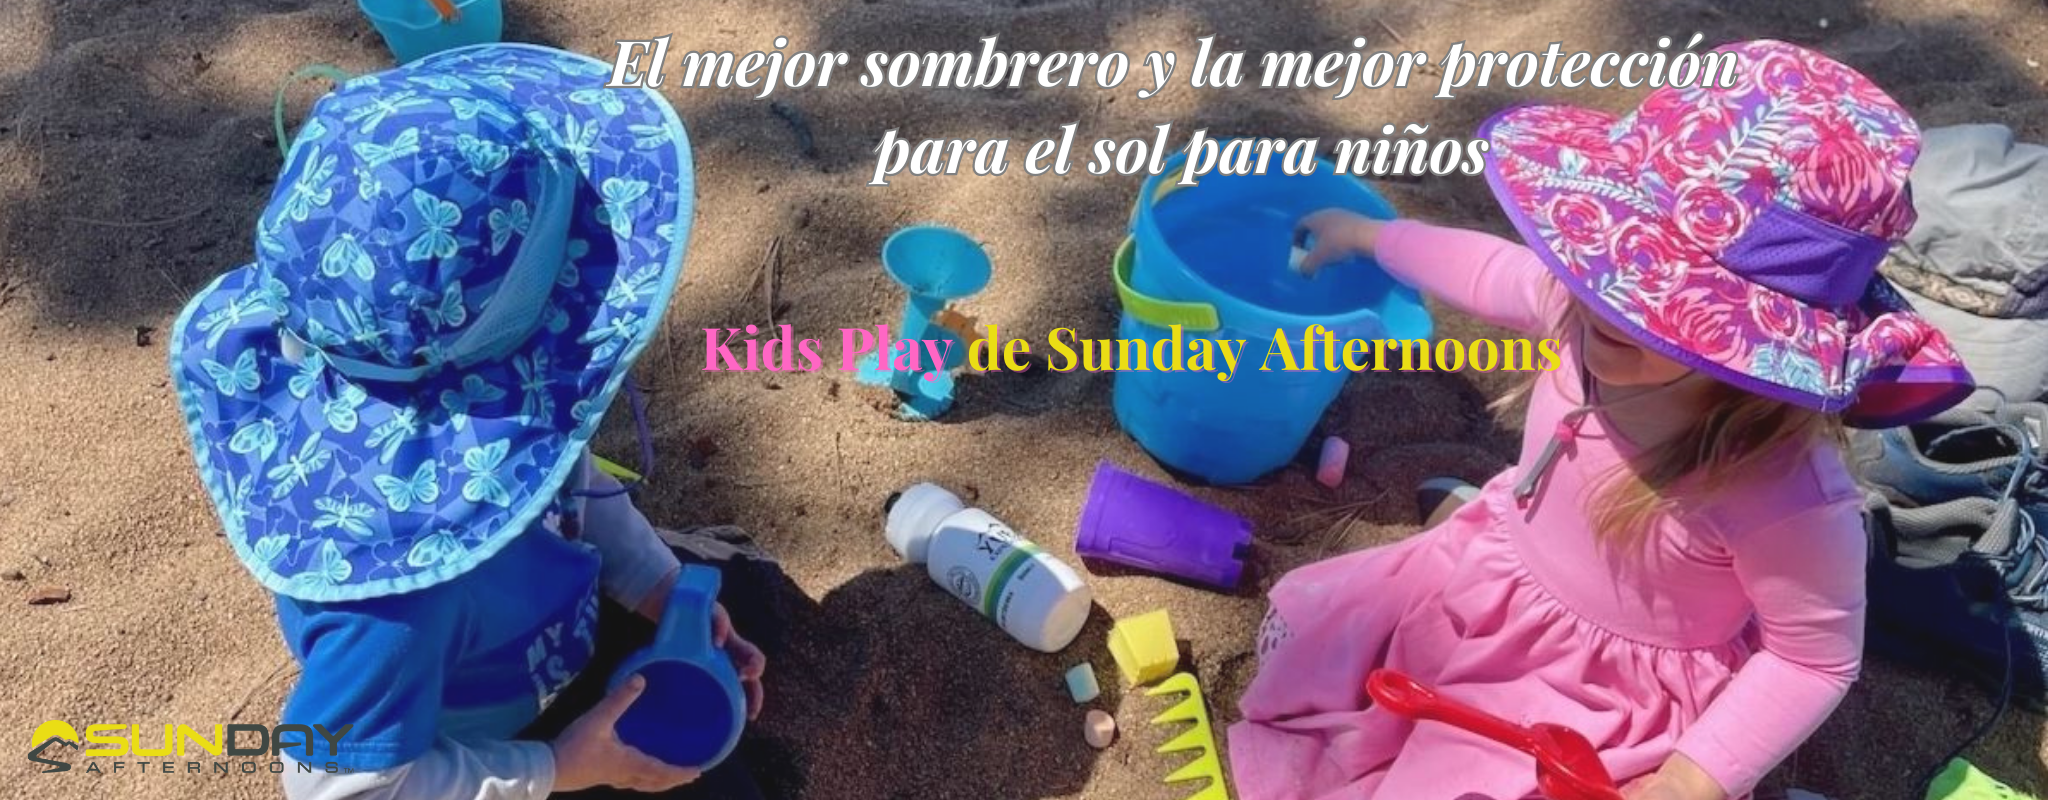 El Mejor Sombrero de Playa para Niños: Kids Play